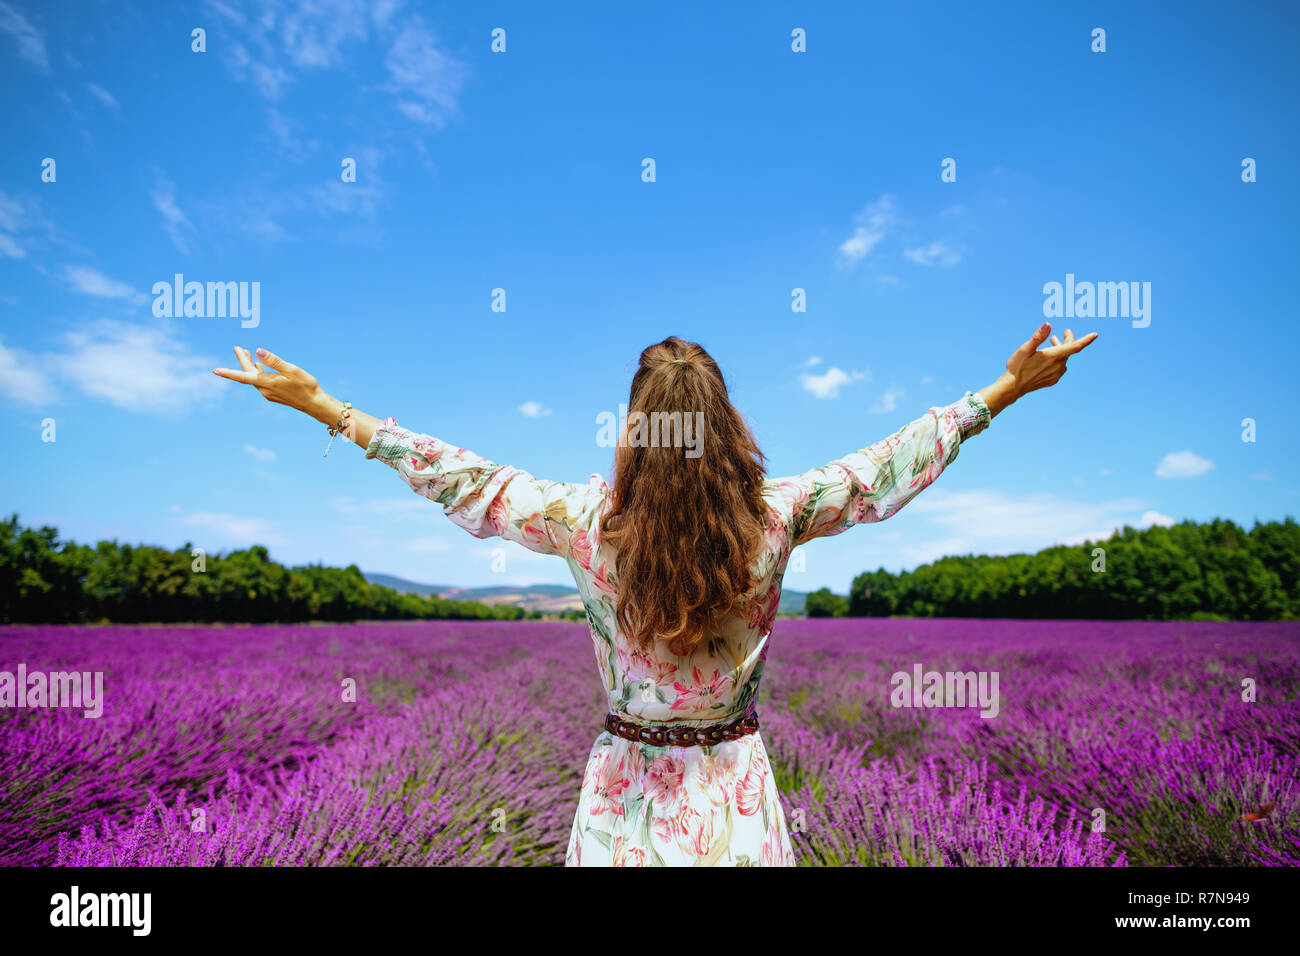 Hinter der jungen Frau im langen Kleid im lavendelfeld in der Provence, Frankreich gesehen freuen. Perfekte Bild der provenzalische Sommer Für social media Profil Stockfoto